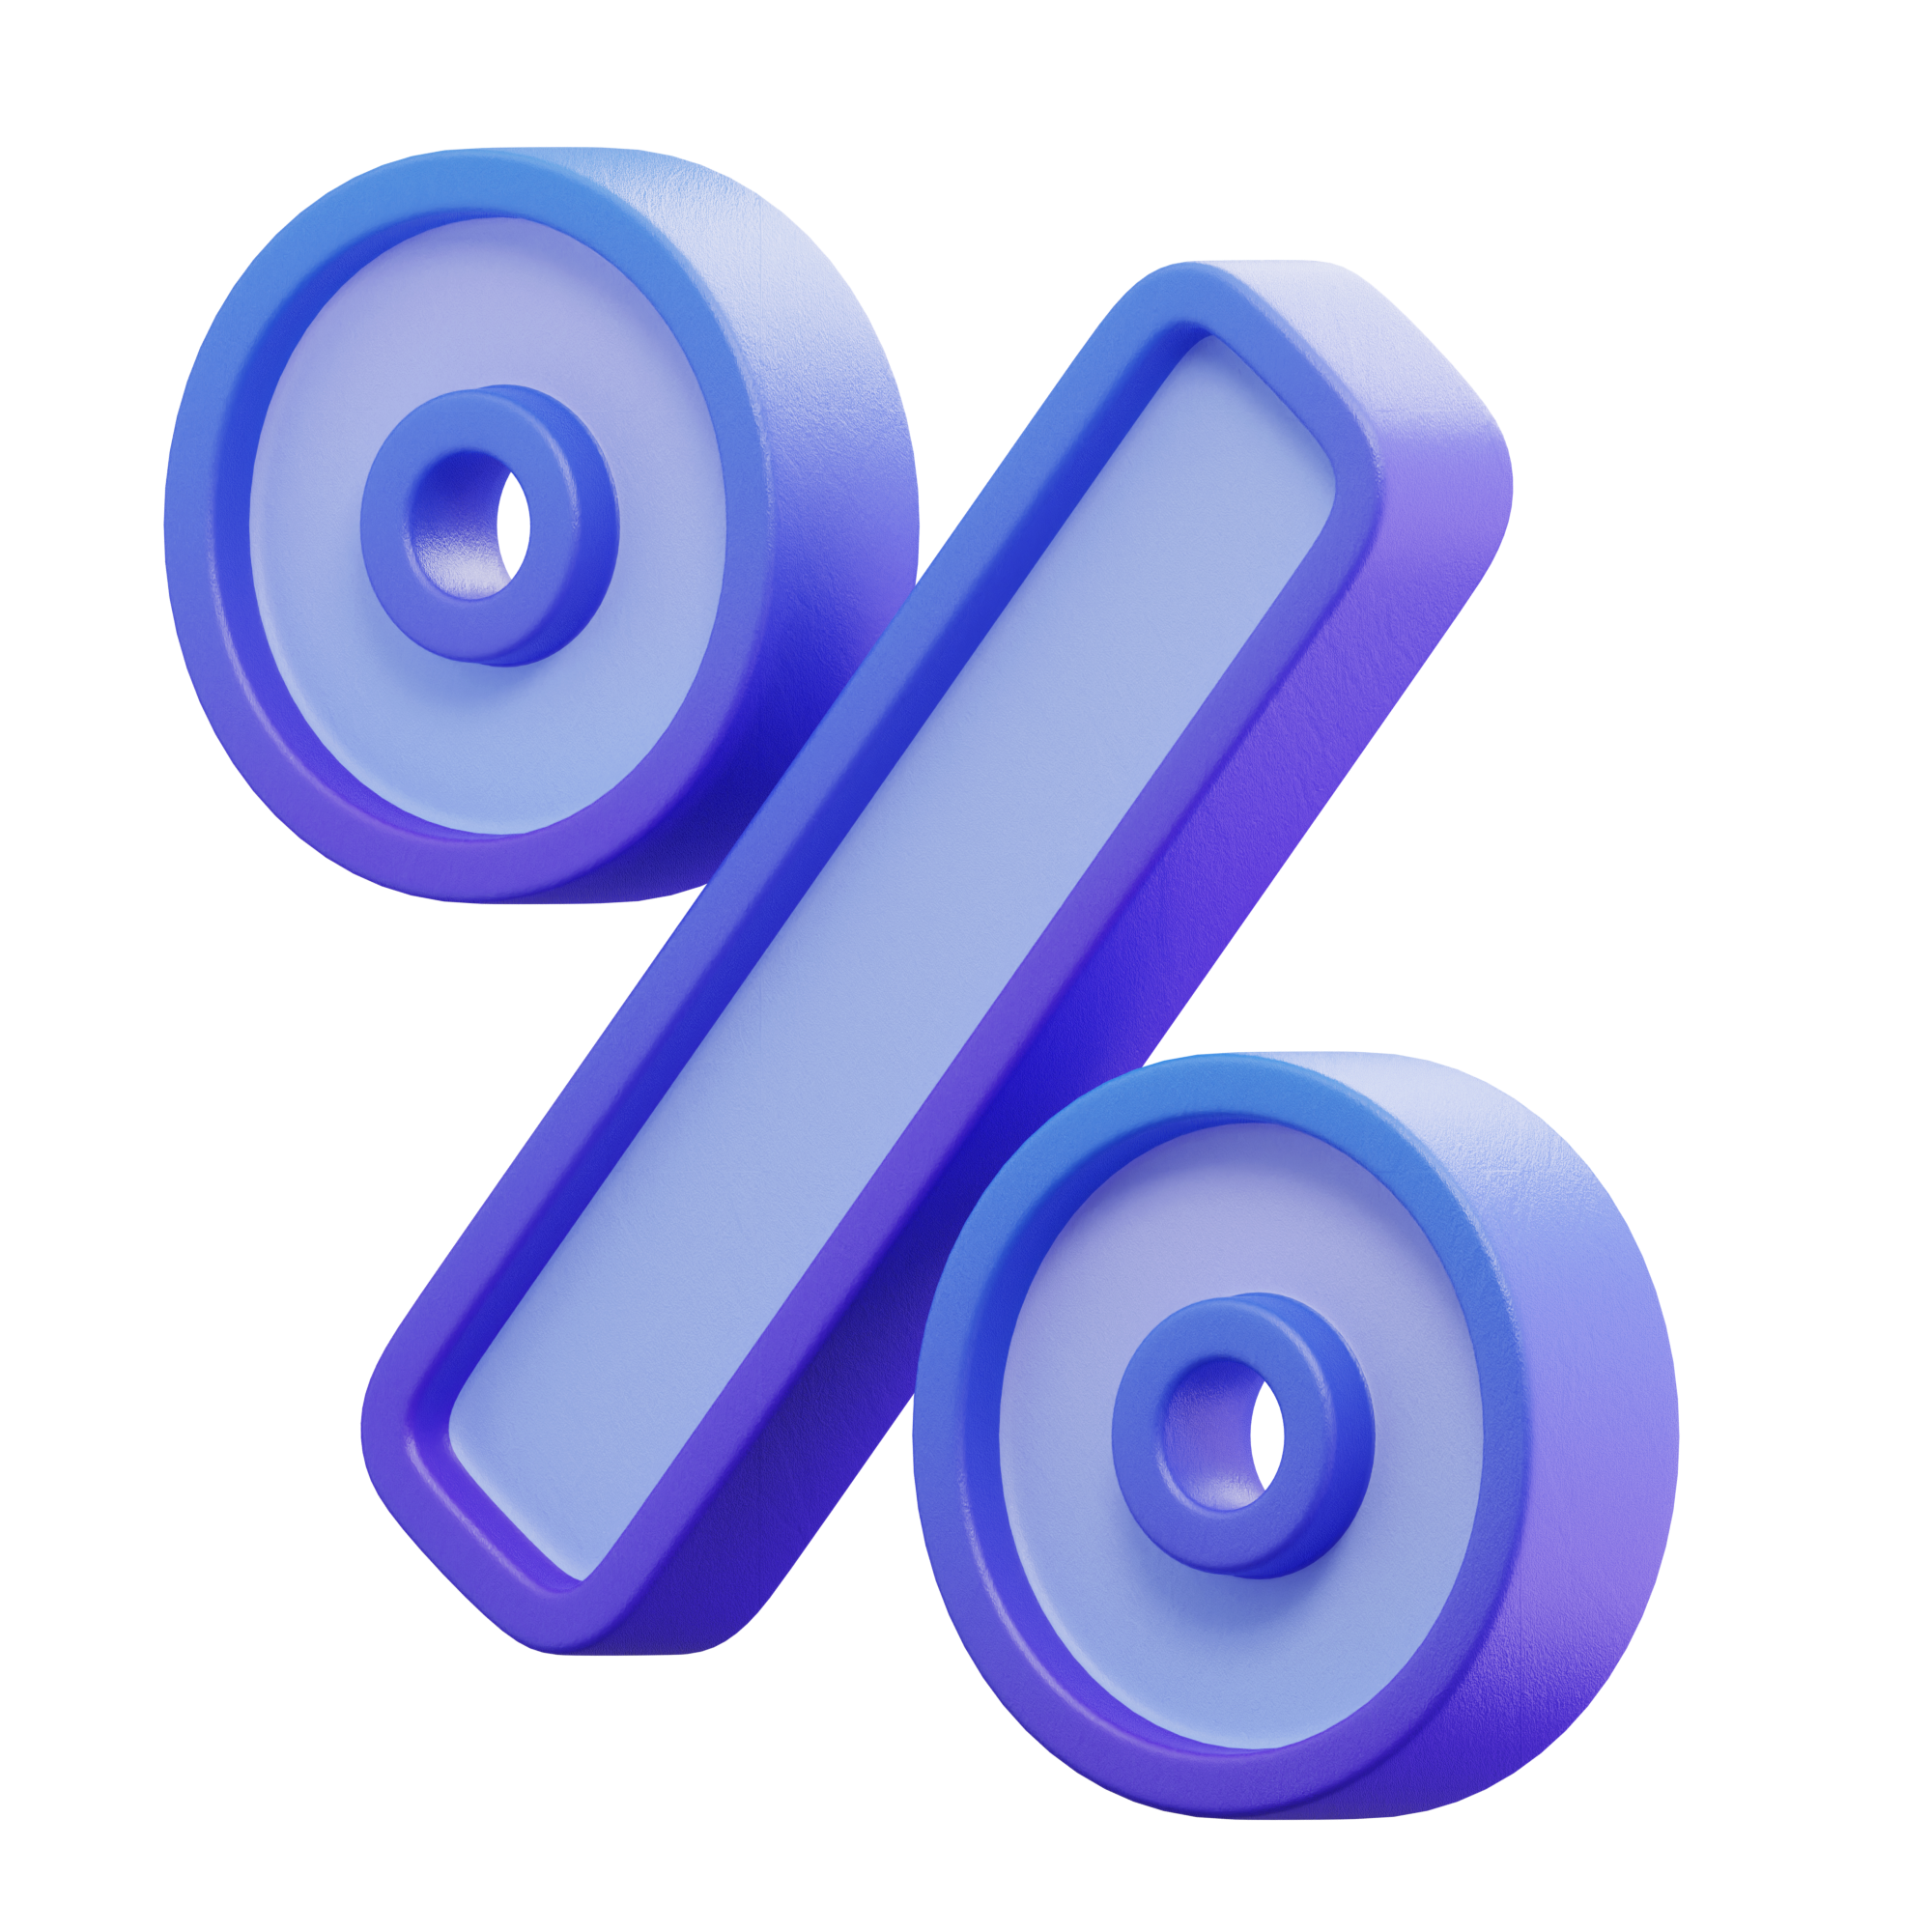 Symbole de pourcentage - Représentation visuelle d'un pourcentage